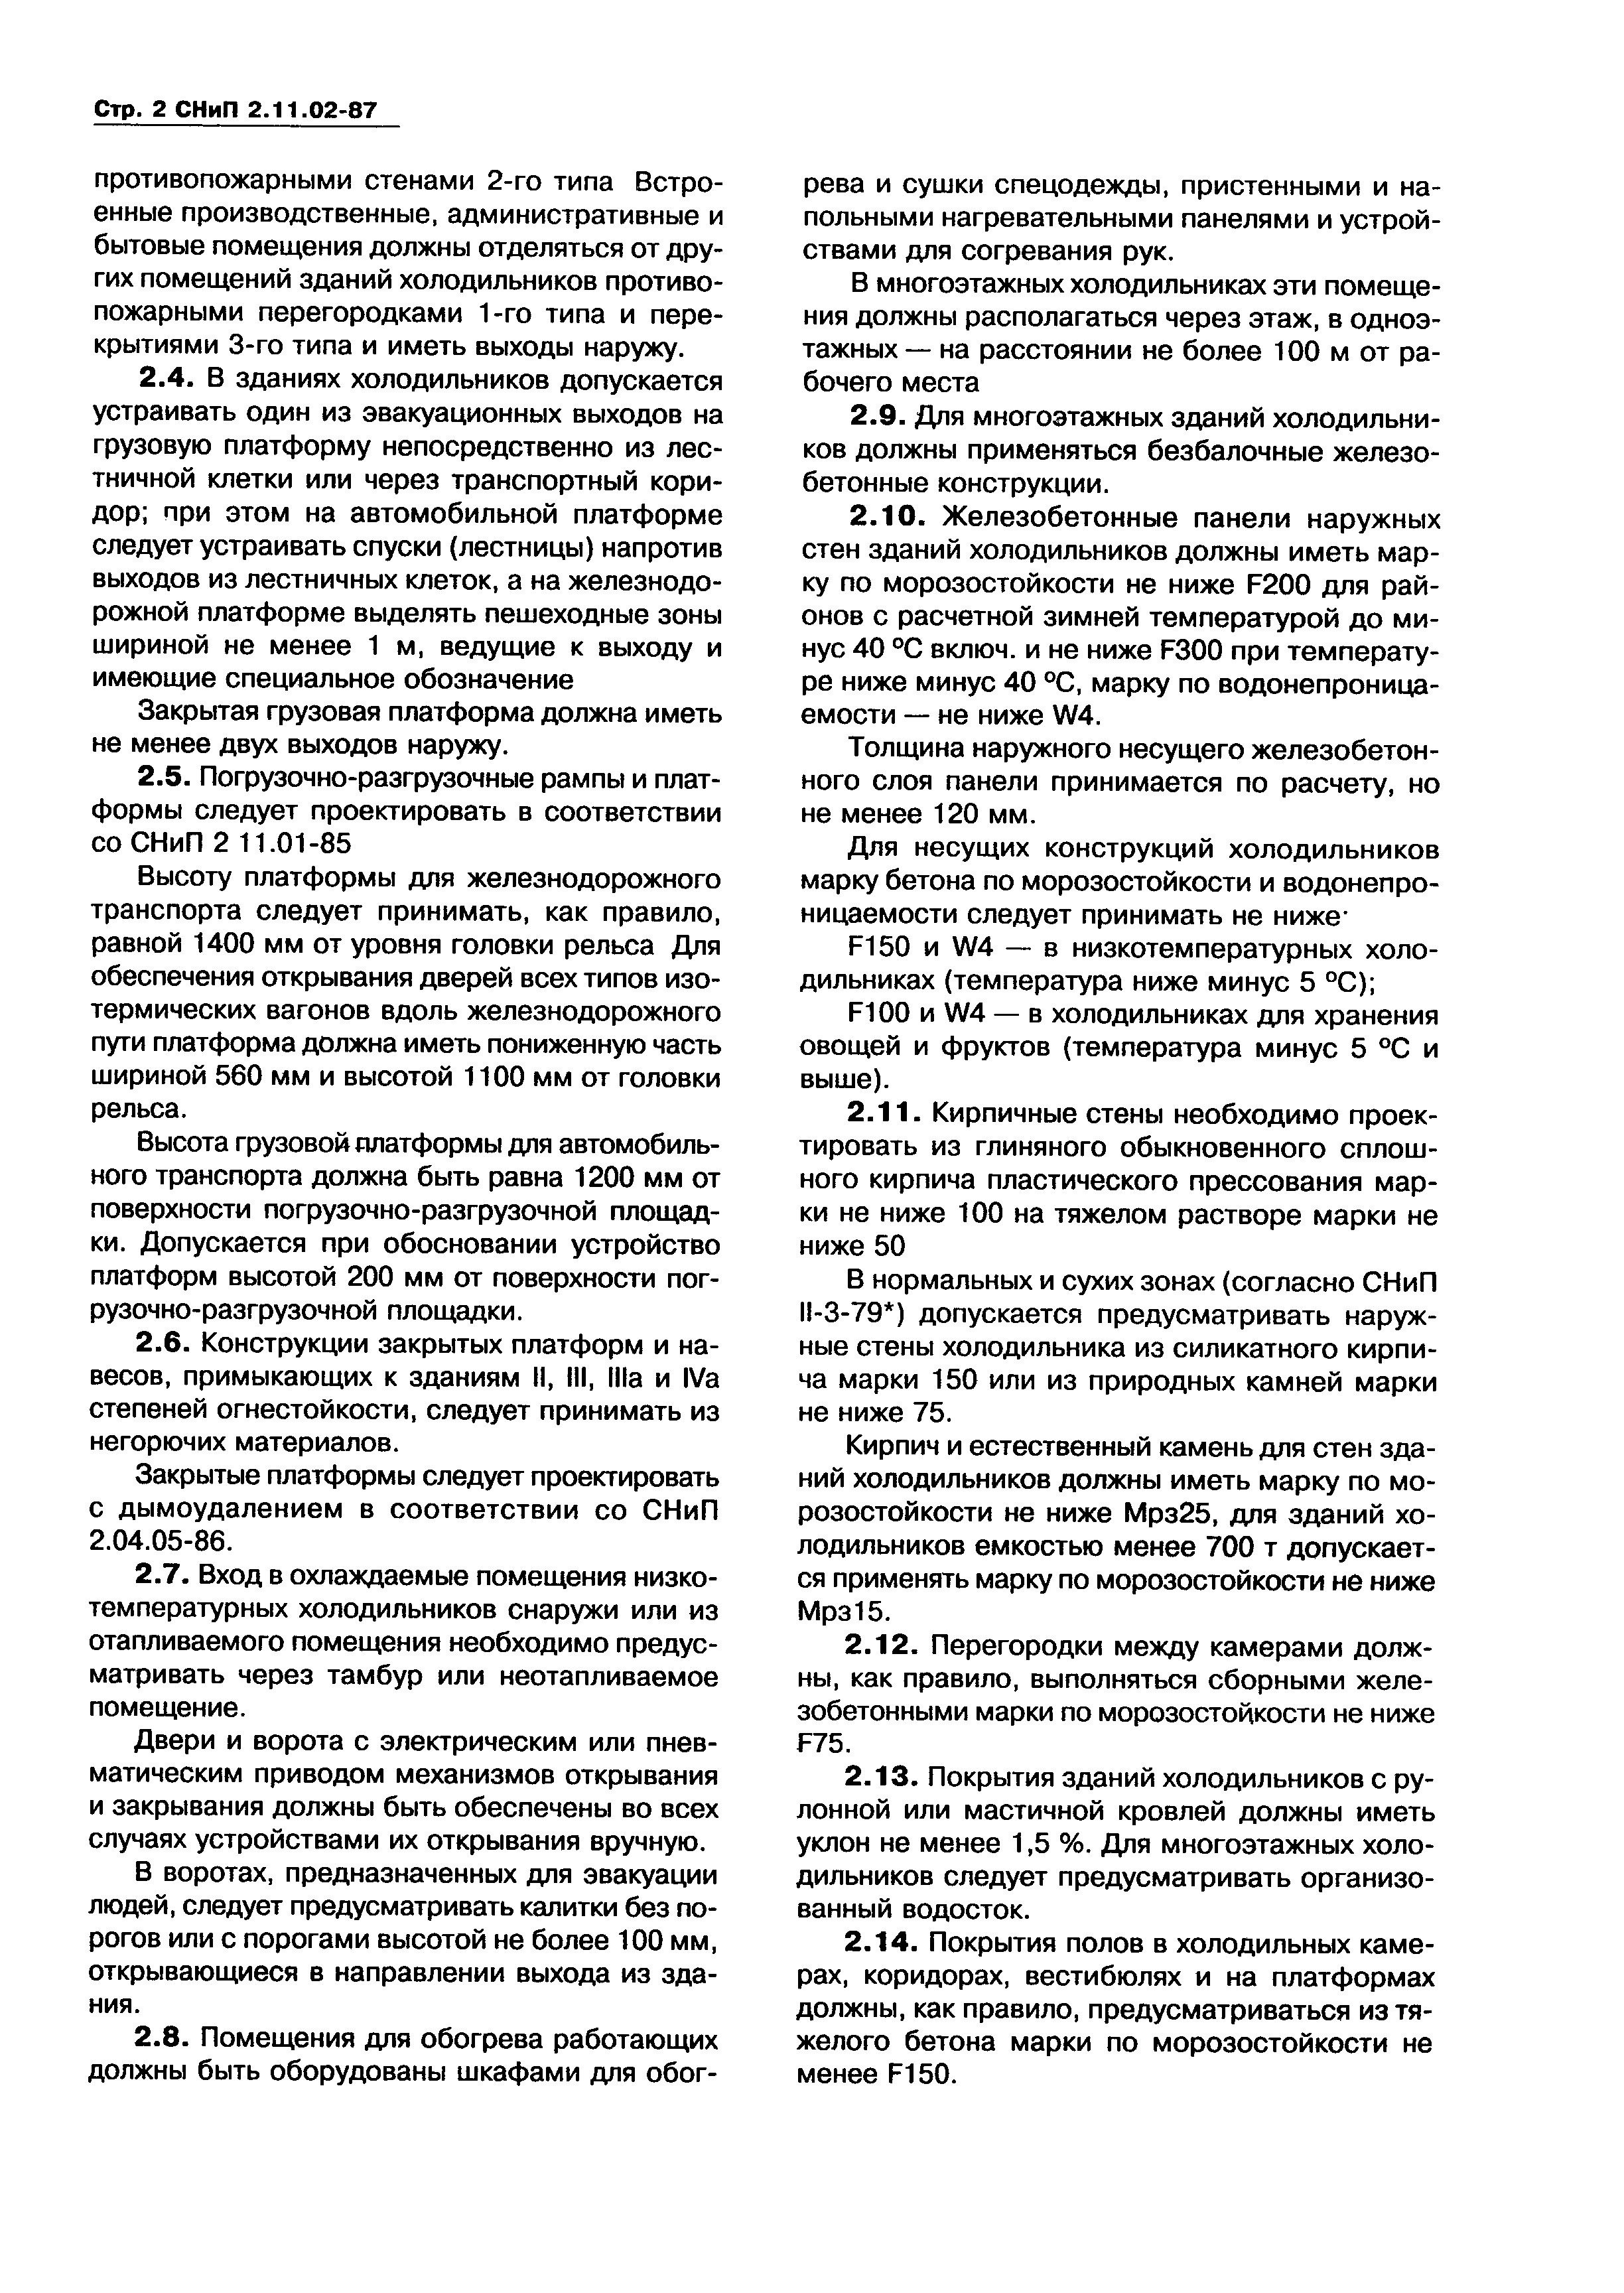 СНиП 2.11.02-87